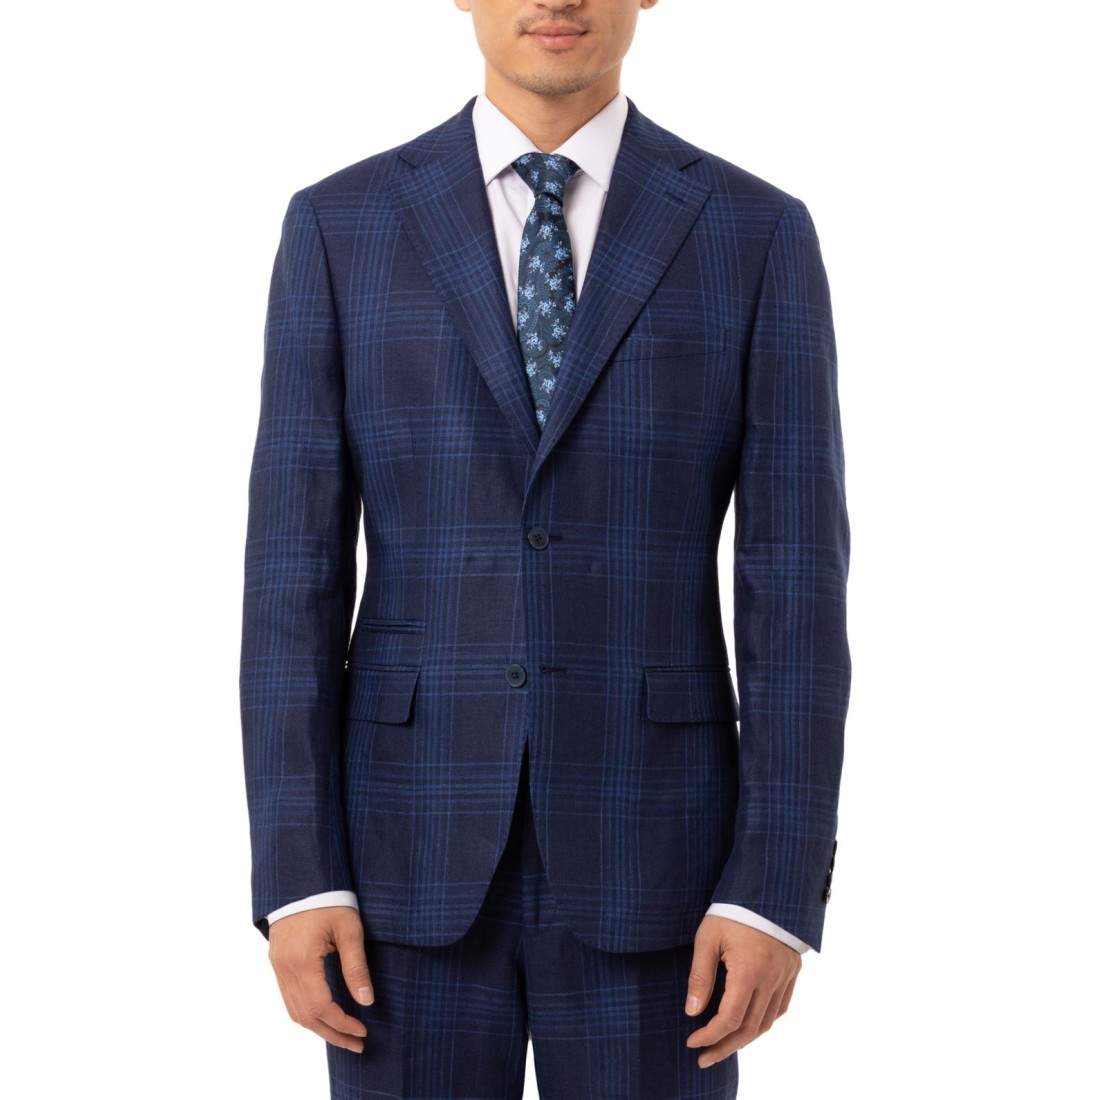 Tallia Men’s Slim-Fit Blue Plaid Linen Suit Separate Jacket (Navy, 40 R)